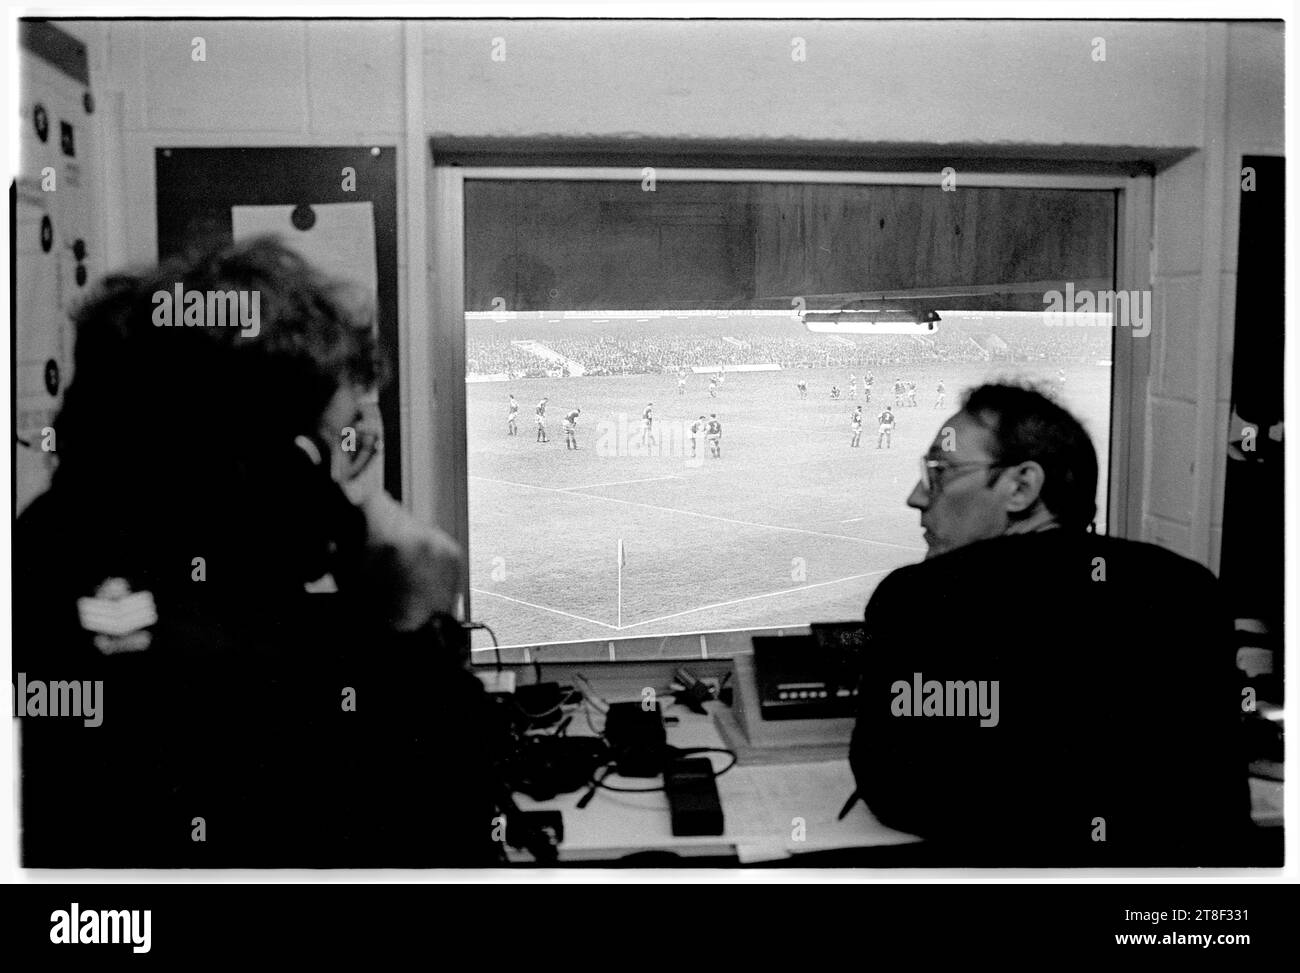 La salle de contrôle calme de l'Ambulance St John's offre une vue imprenable sur le match des cinq nations à domicile contre la France, le 16 1996 mars, au vieux Arms Park de Cardiff, une victoire à domicile de 16-15 pour le pays de Galles. Après ce match, l'ancien stade a été radicalement agrandi et réaménagé avec un toit pour accueillir la finale de la coupe du monde de rugby en 1999. Photo : ROB WATKINS Banque D'Images